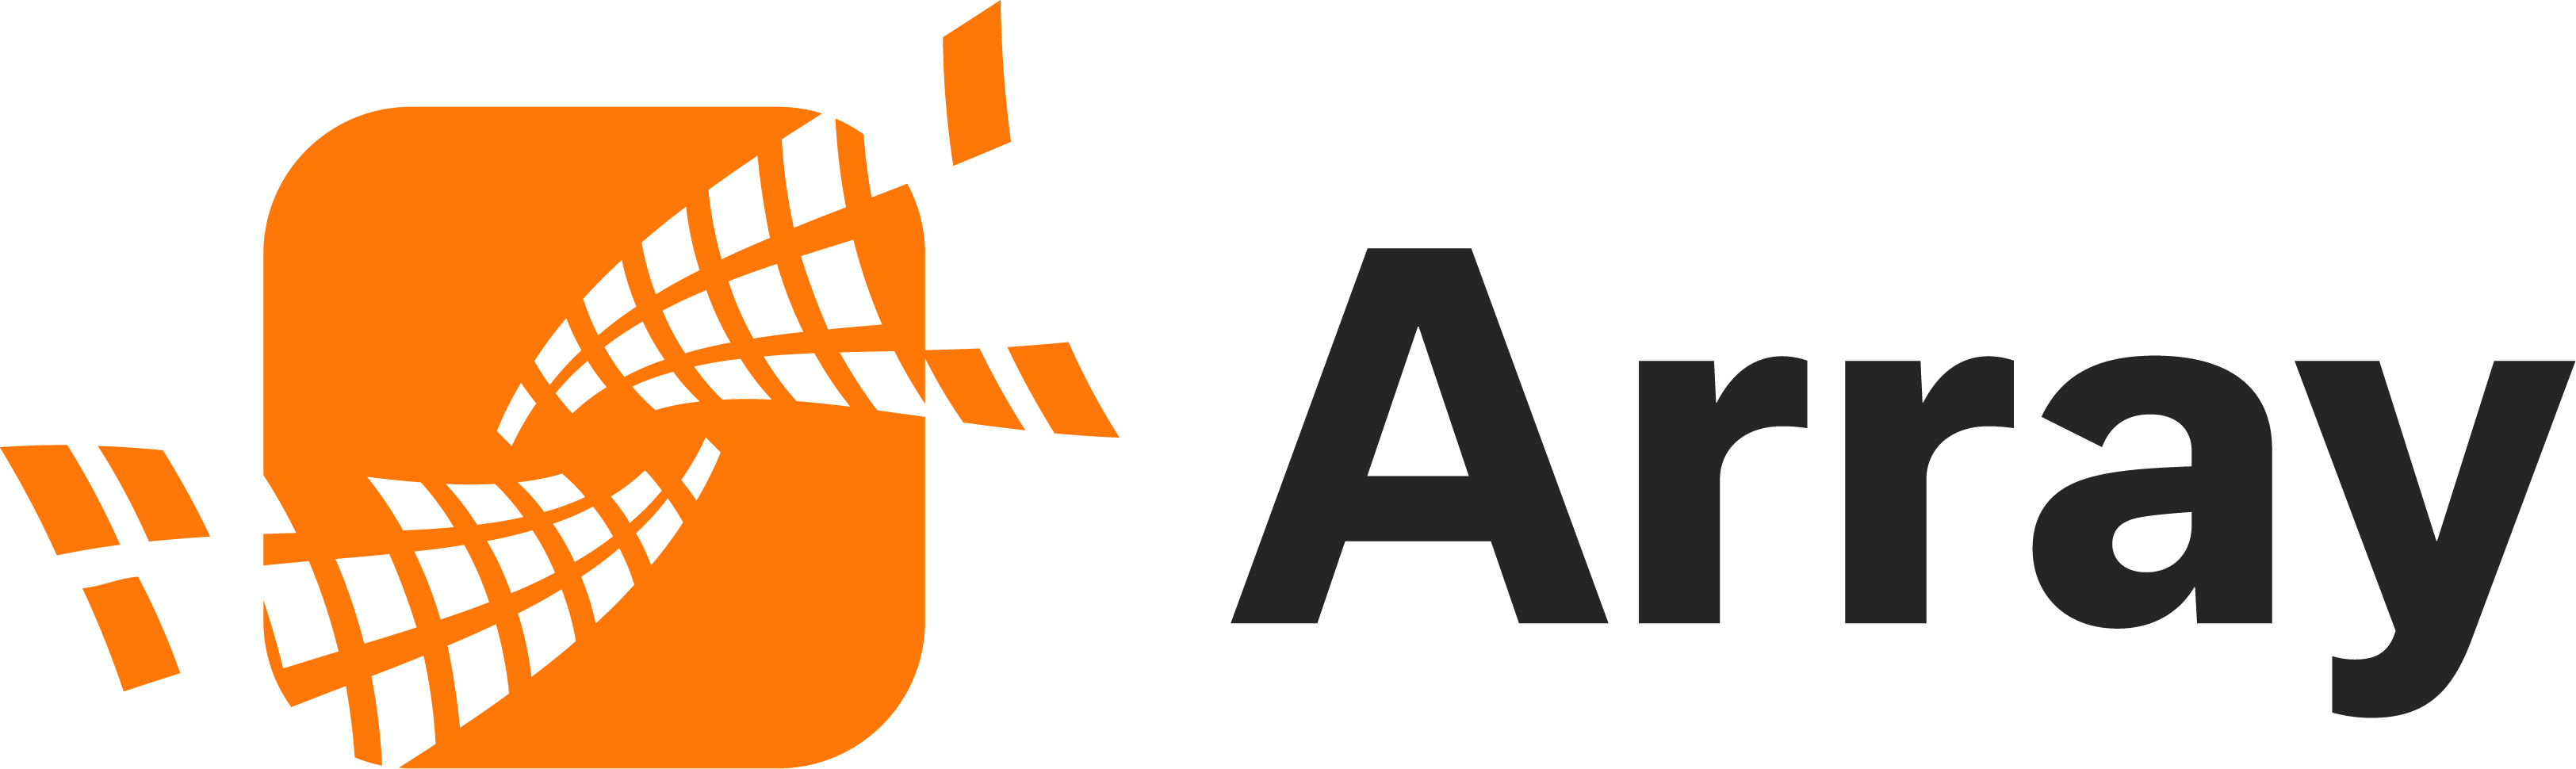 Array Networks - Cybernexa Partner